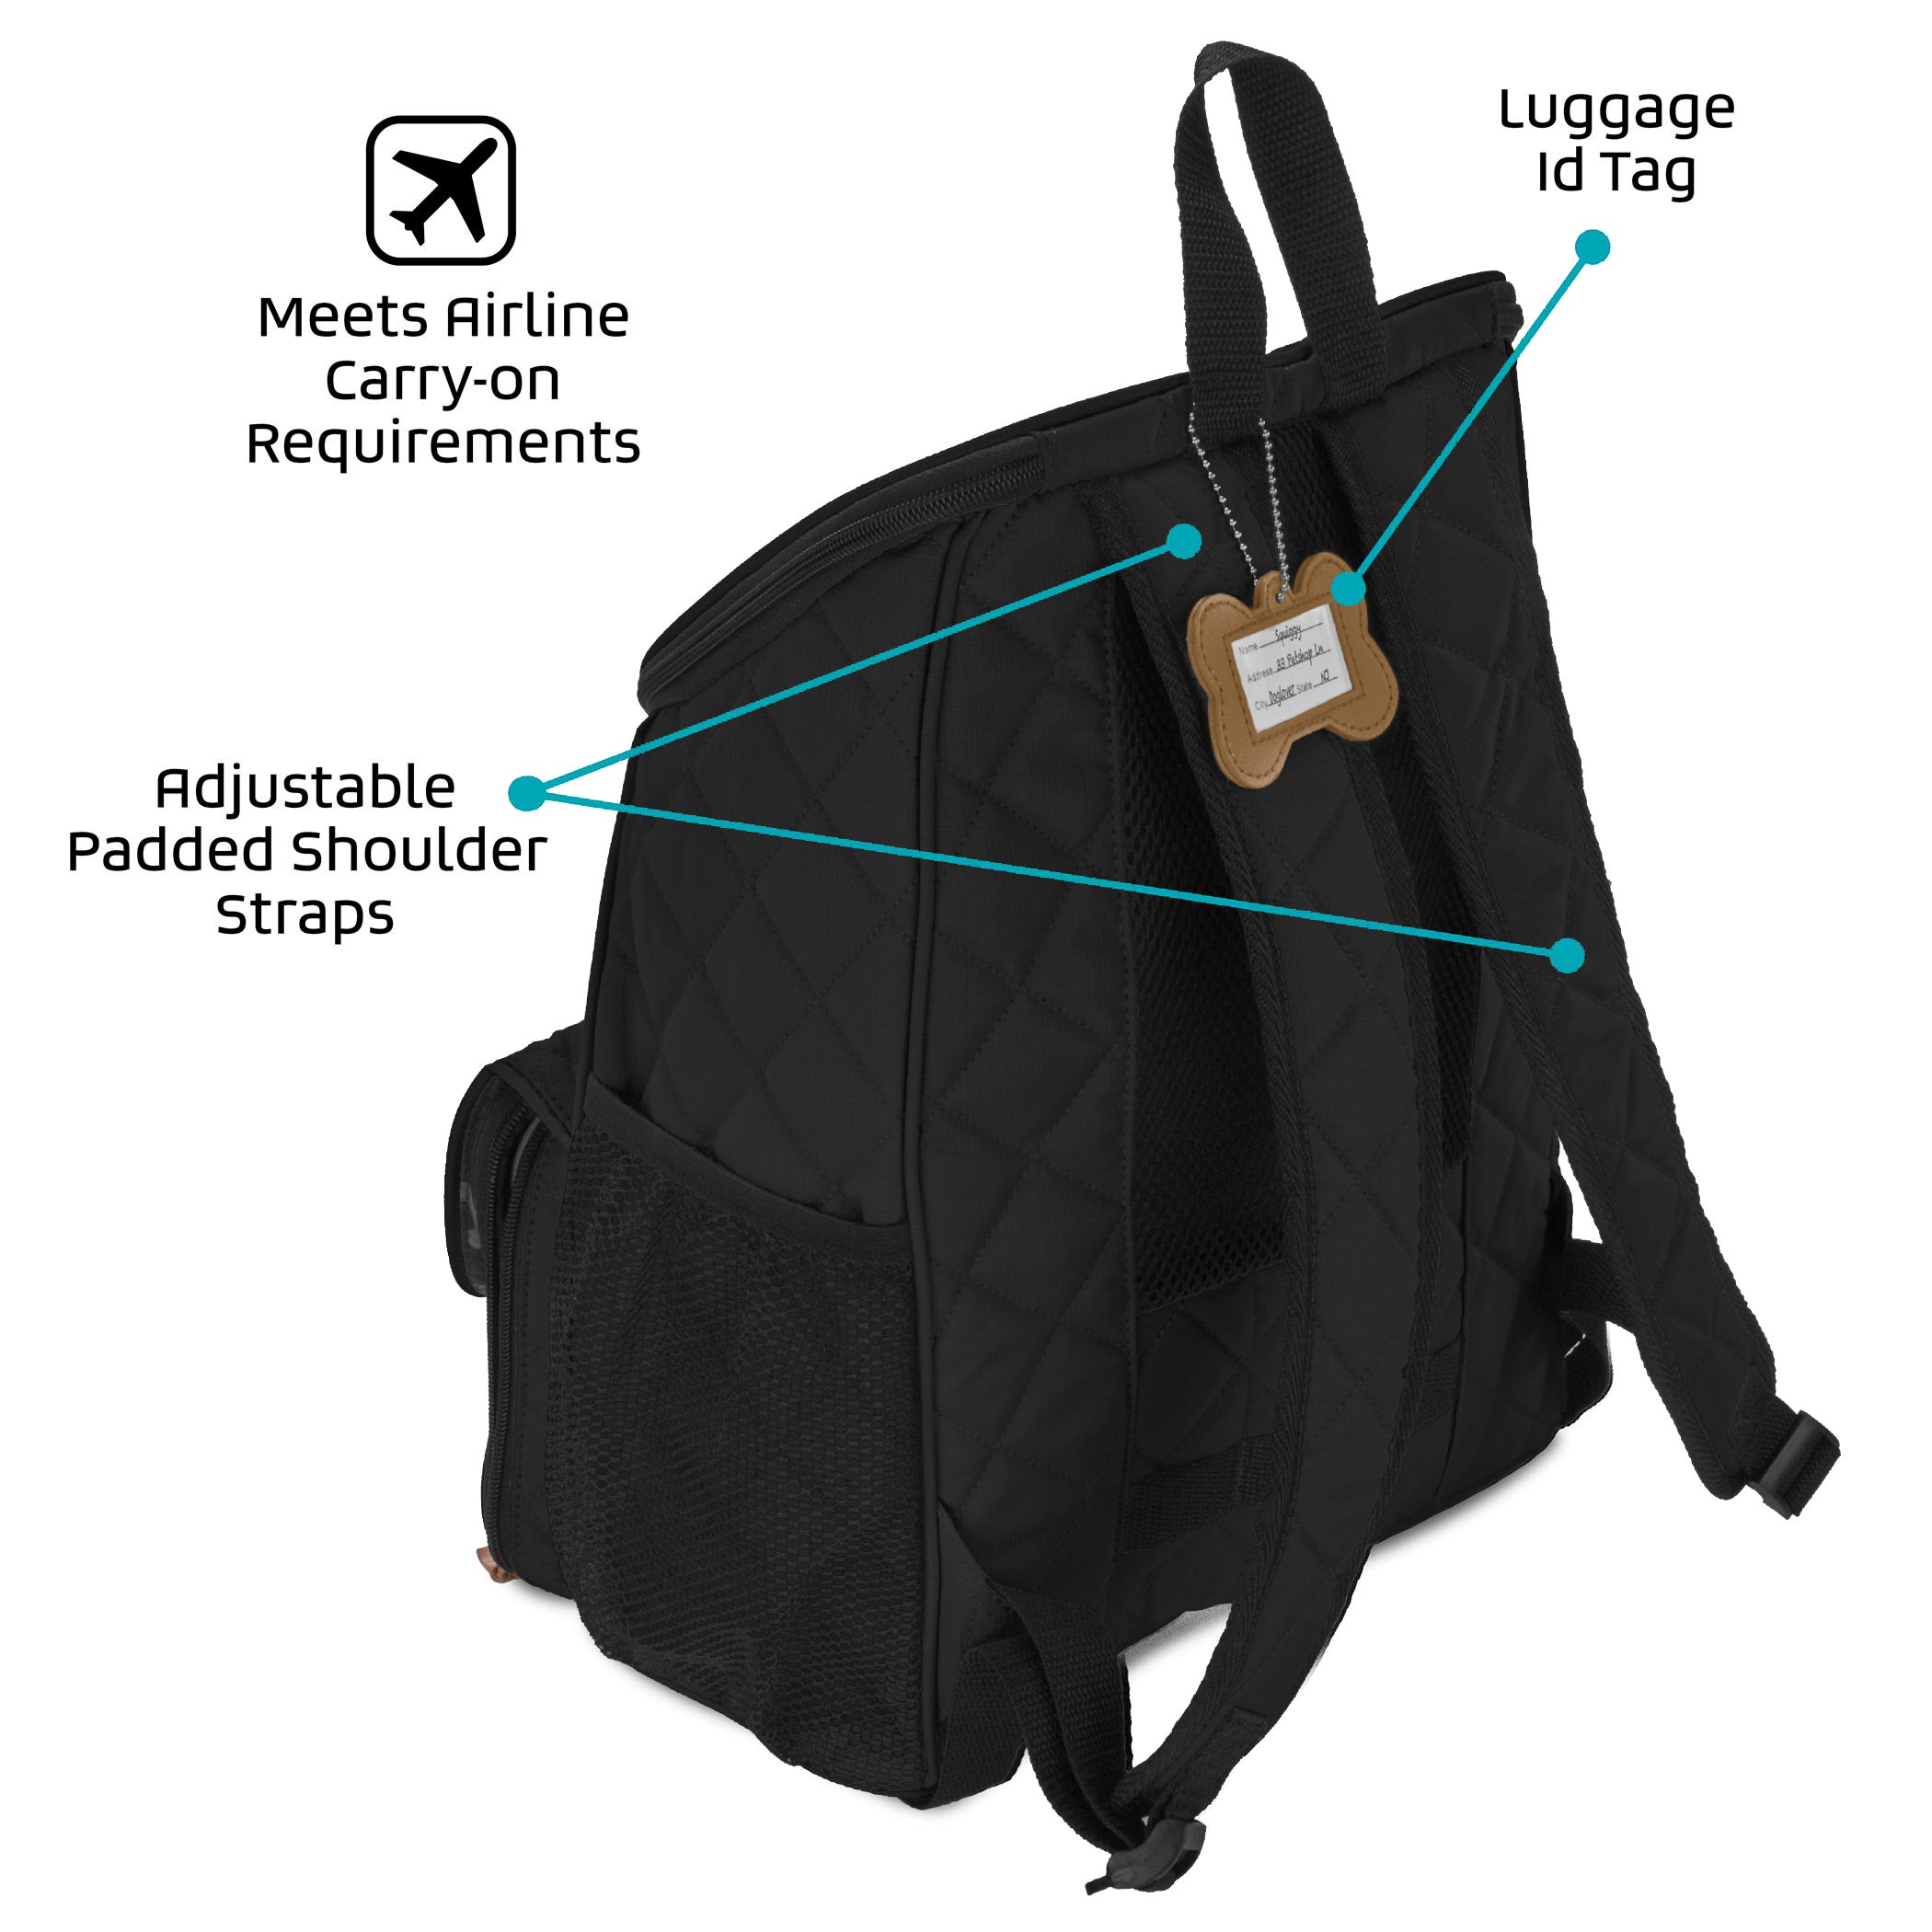 Bundle: ODG Day/Night Walking Bag (Black) and ODG Weekender Backpack TM (Black)